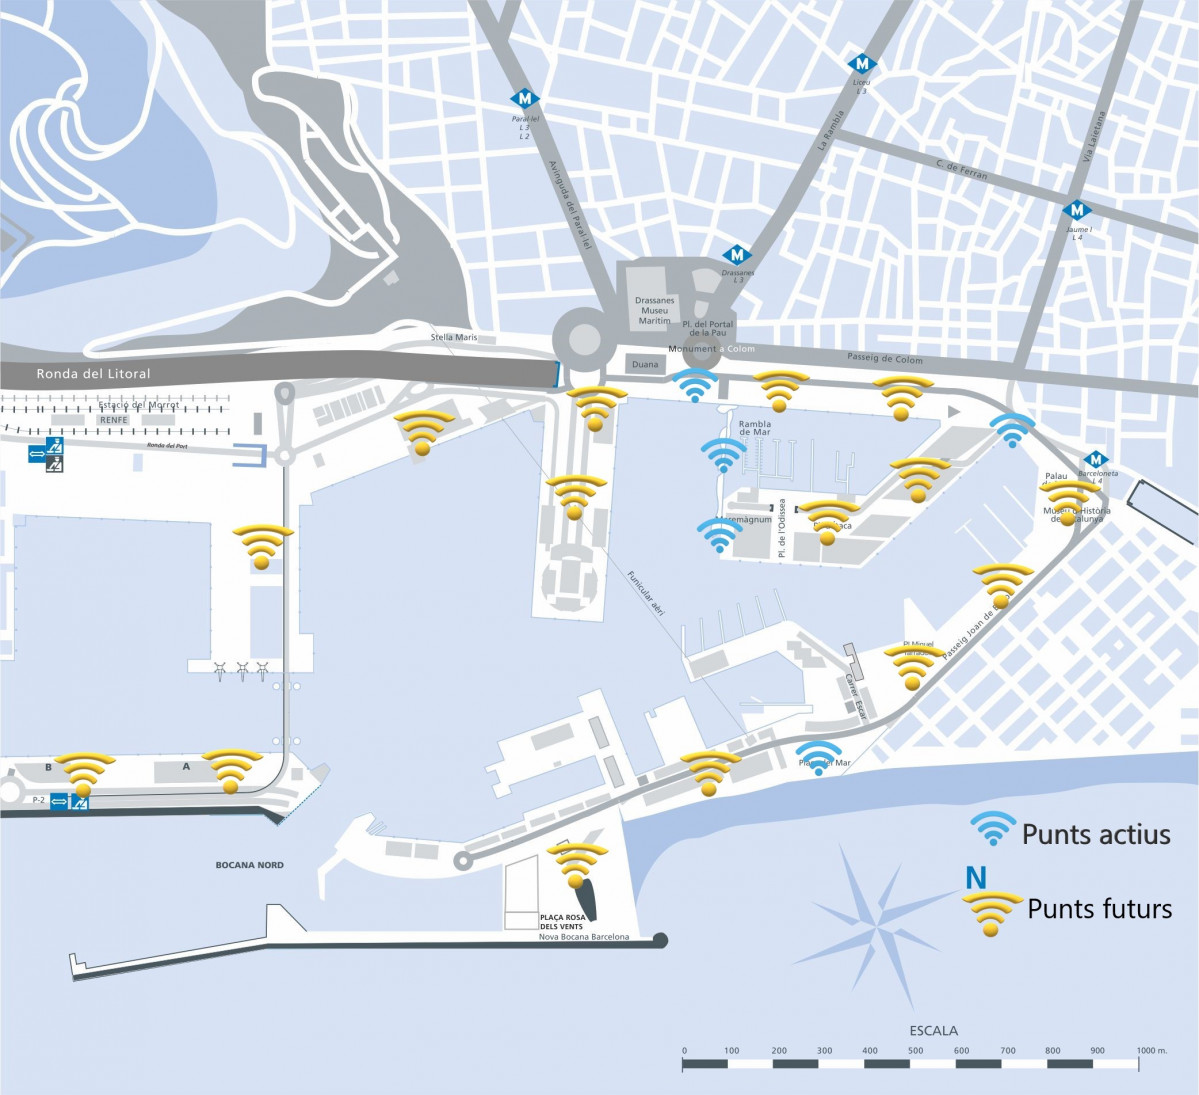 Port de Barcelona   mapa port vell   wifi